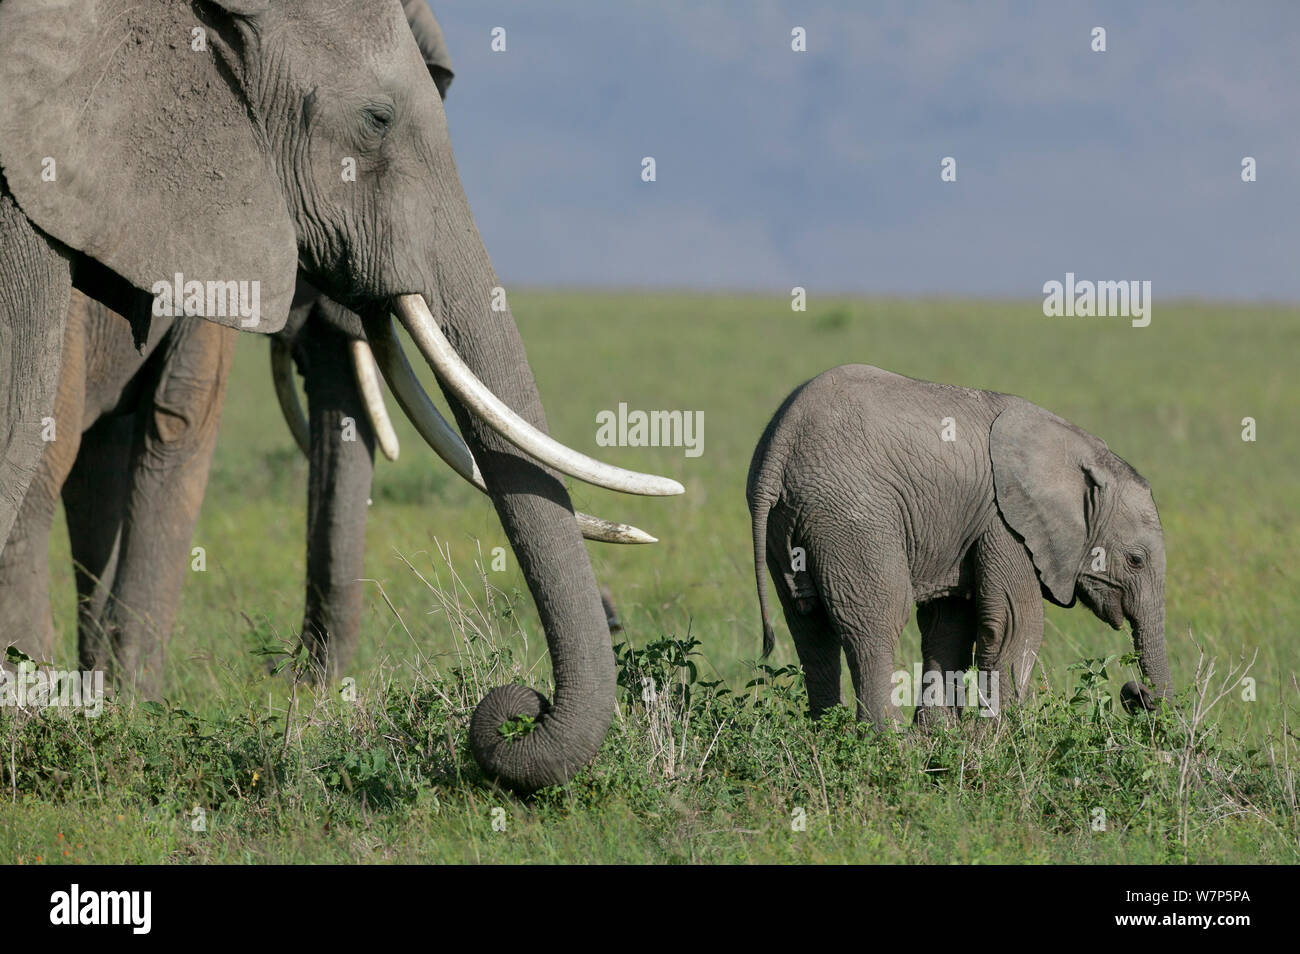 L'éléphant africain (Loxodonta africana) mère et son petit se nourrissent d'herbe. Masai-Mara Game Reserve, Kenya. Banque D'Images